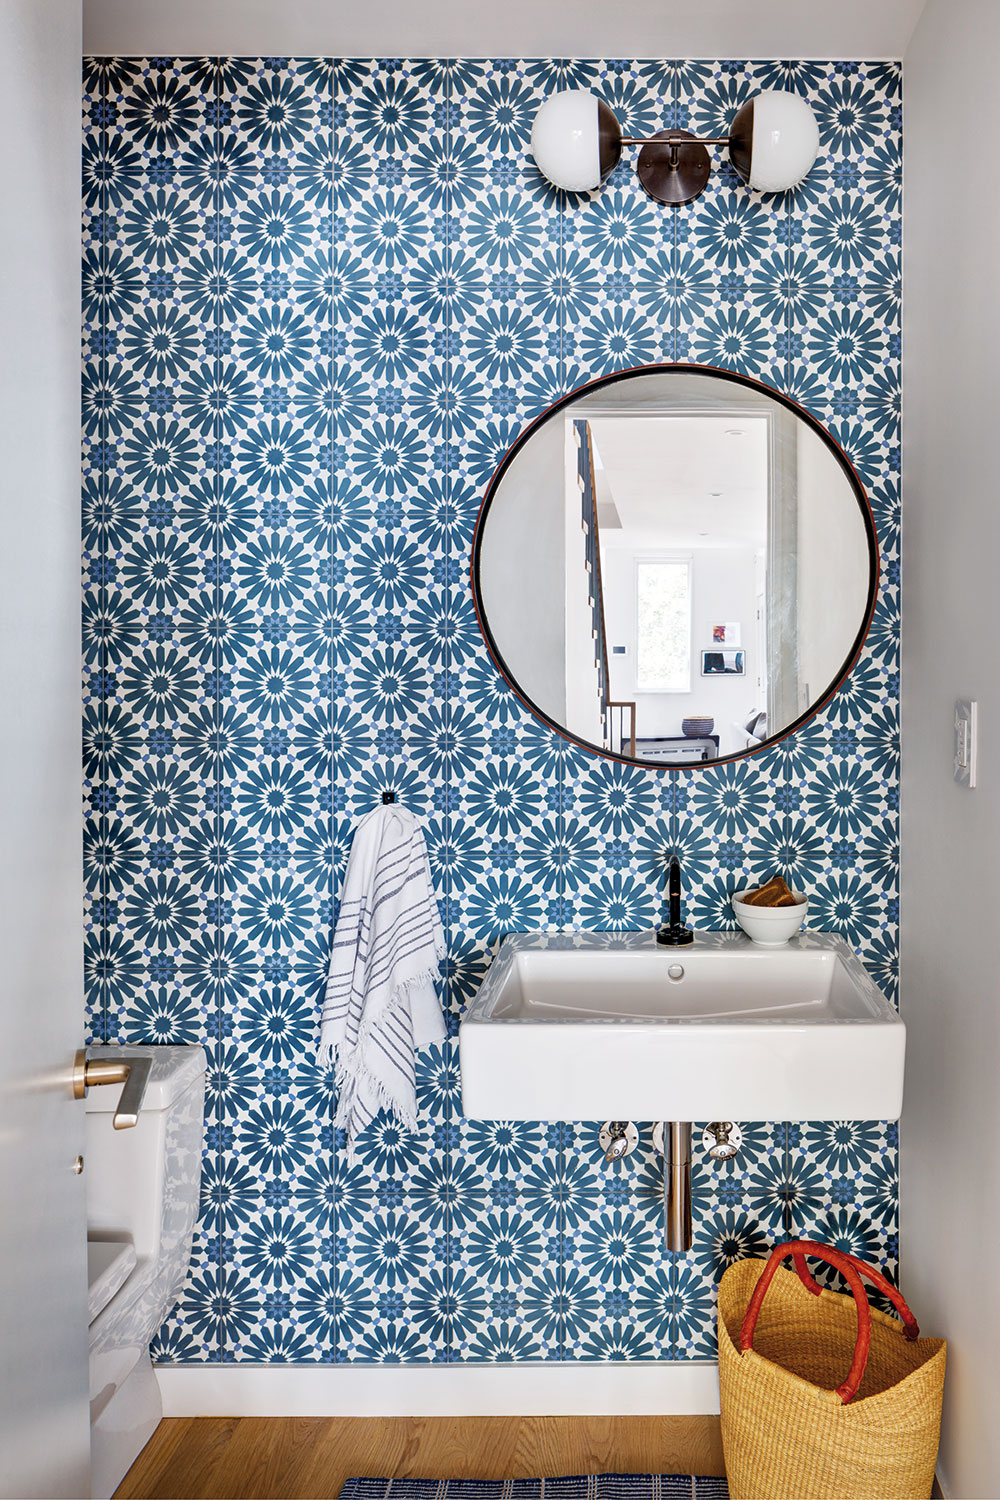 Dubovou podlahu toalety doplňuje modrobílý keramický obklad na stěnách. FOTO FRANCIS DZIKOWSKI